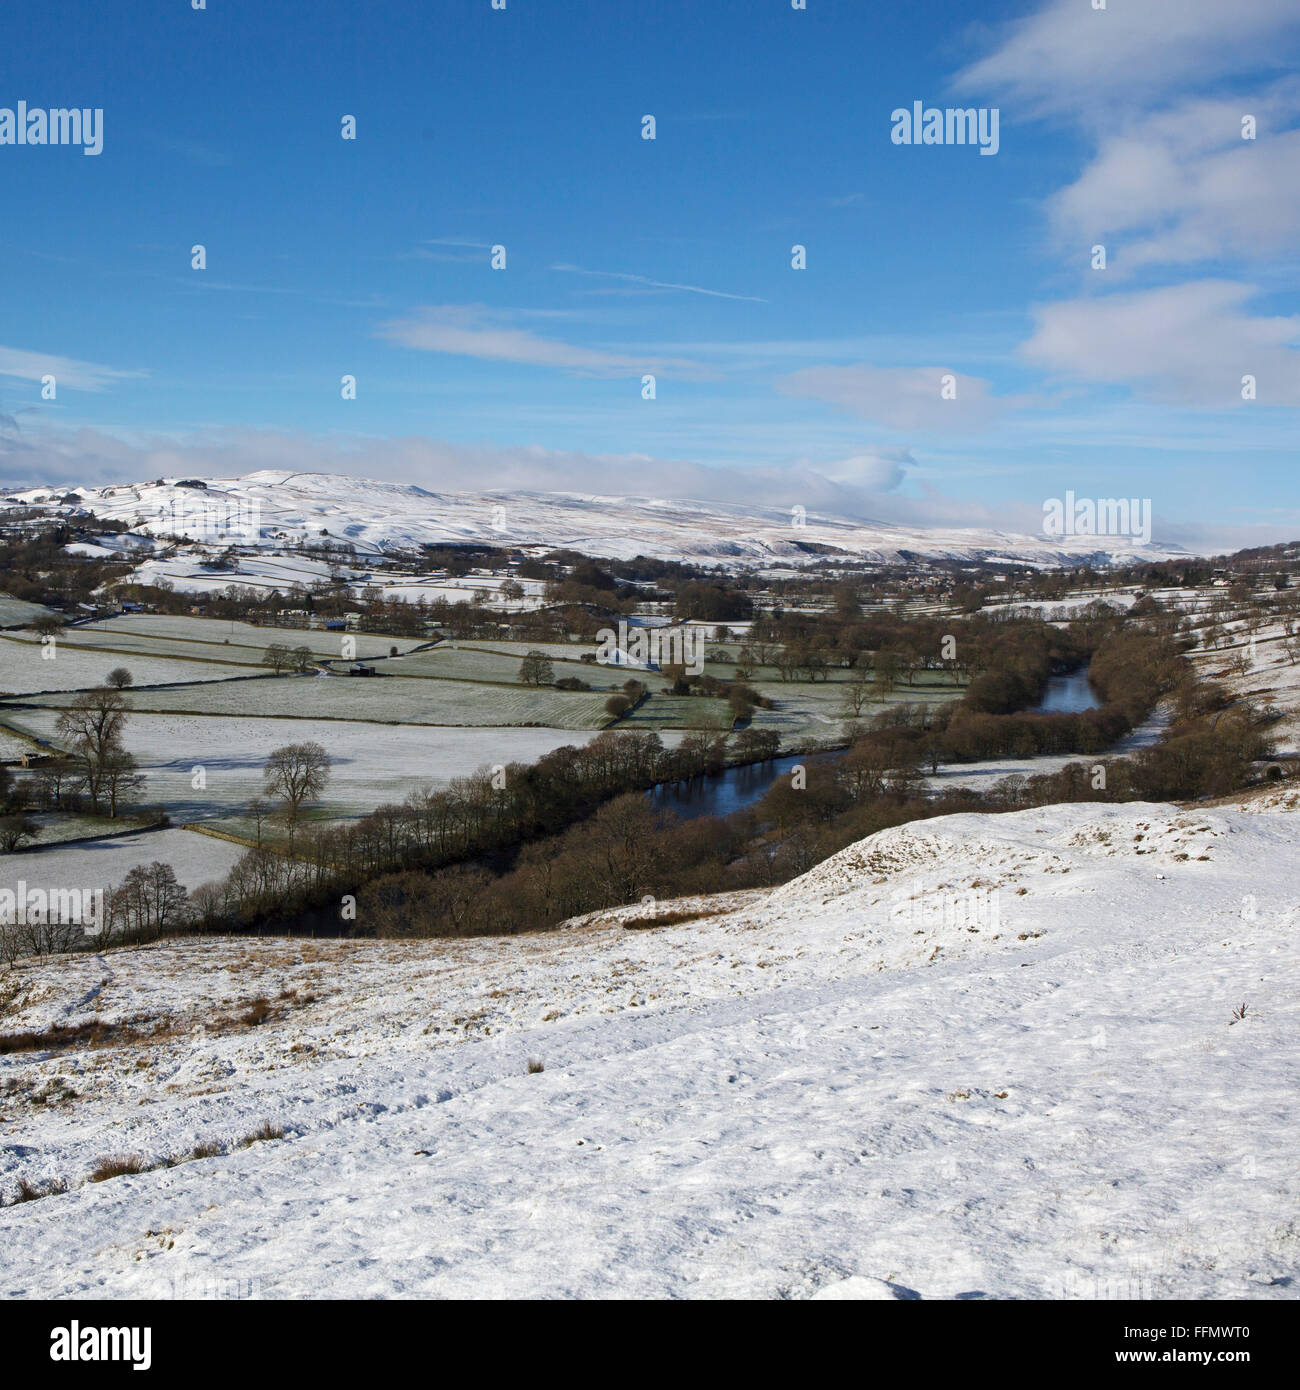 La neige recouvre les champs dans la région de Teesdale dans le comté de Durham, Angleterre. La Rivière Tees traverse le paysage. Banque D'Images